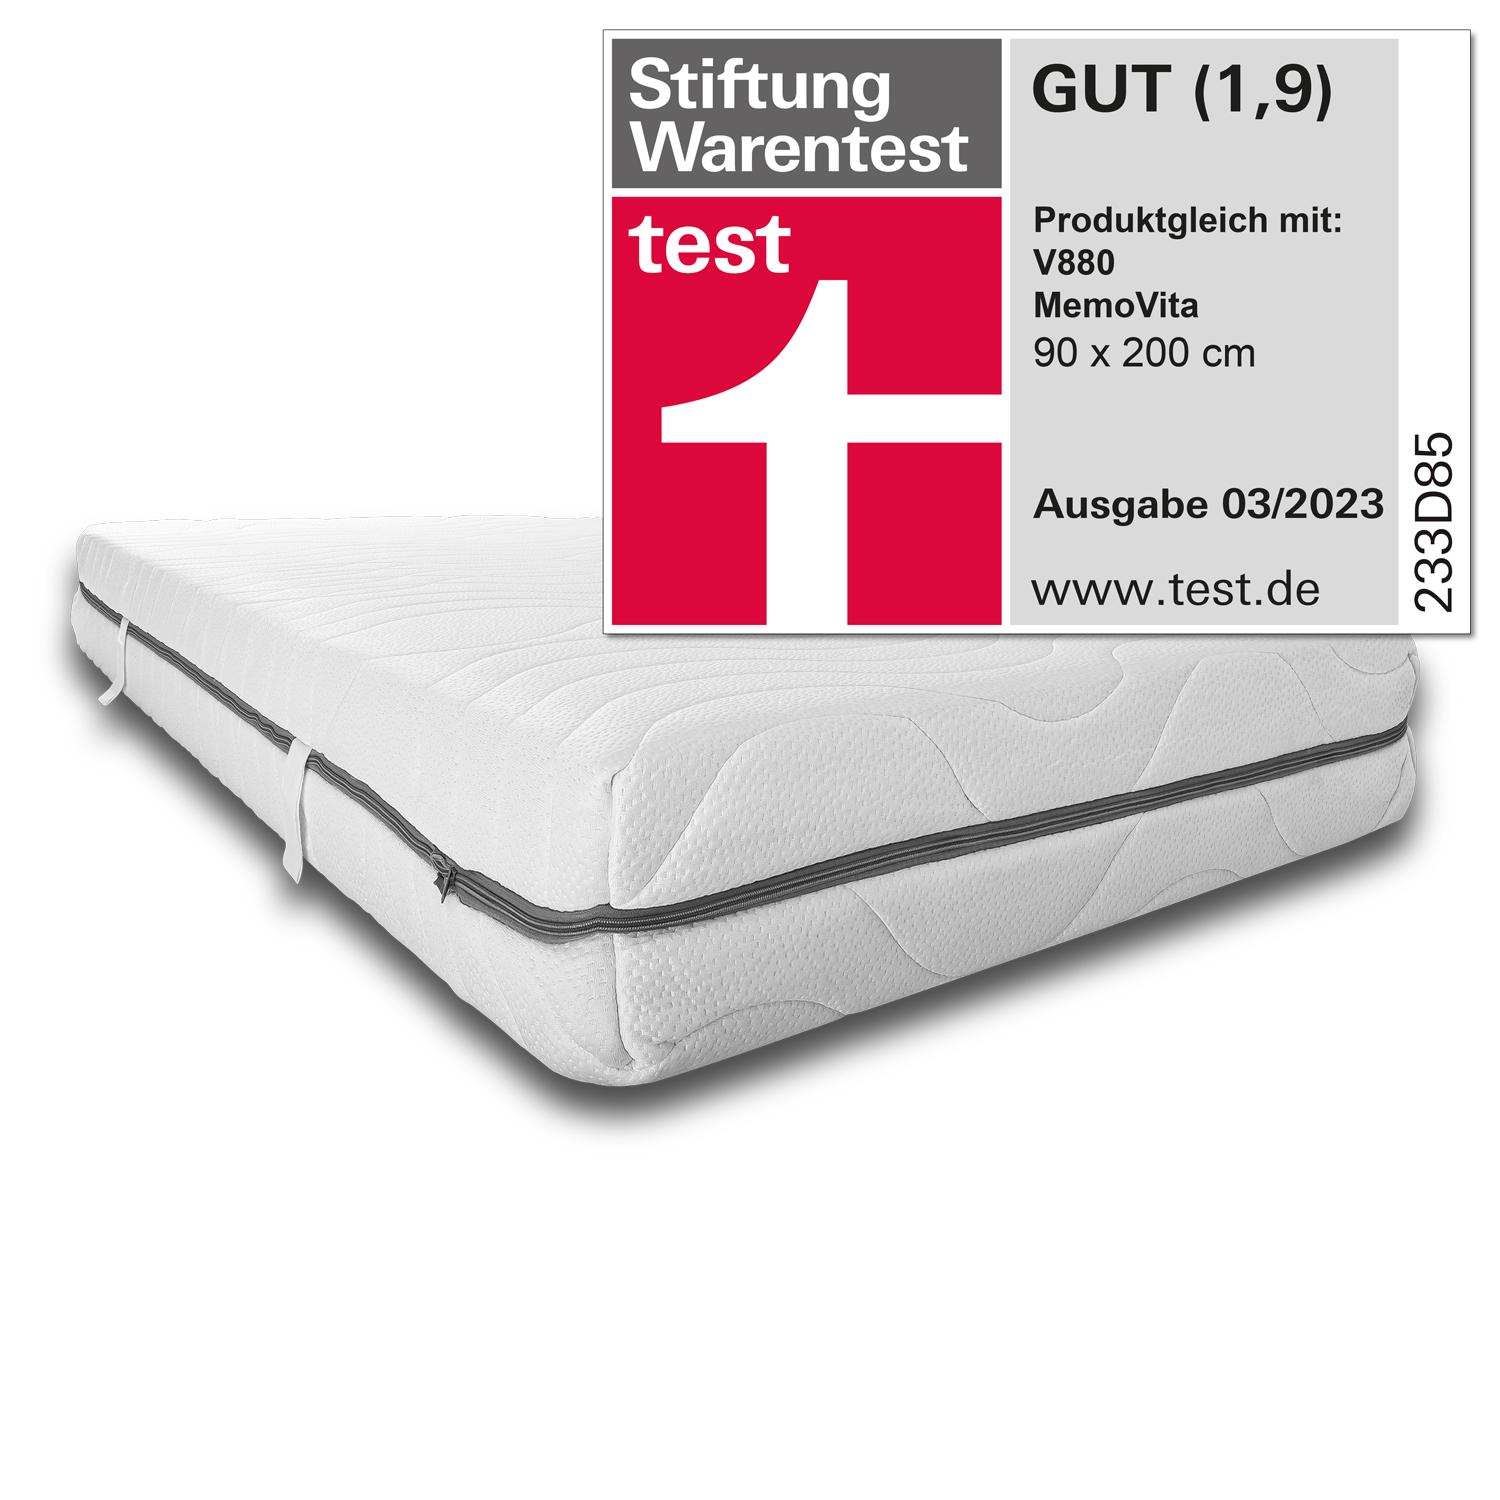 7 bölgeli viskoelastik yatak Sleezzz Smart 90 x 200 cm, yükseklik 18 cm, sertlik seviyesi H3, havalı hafızalı sünger